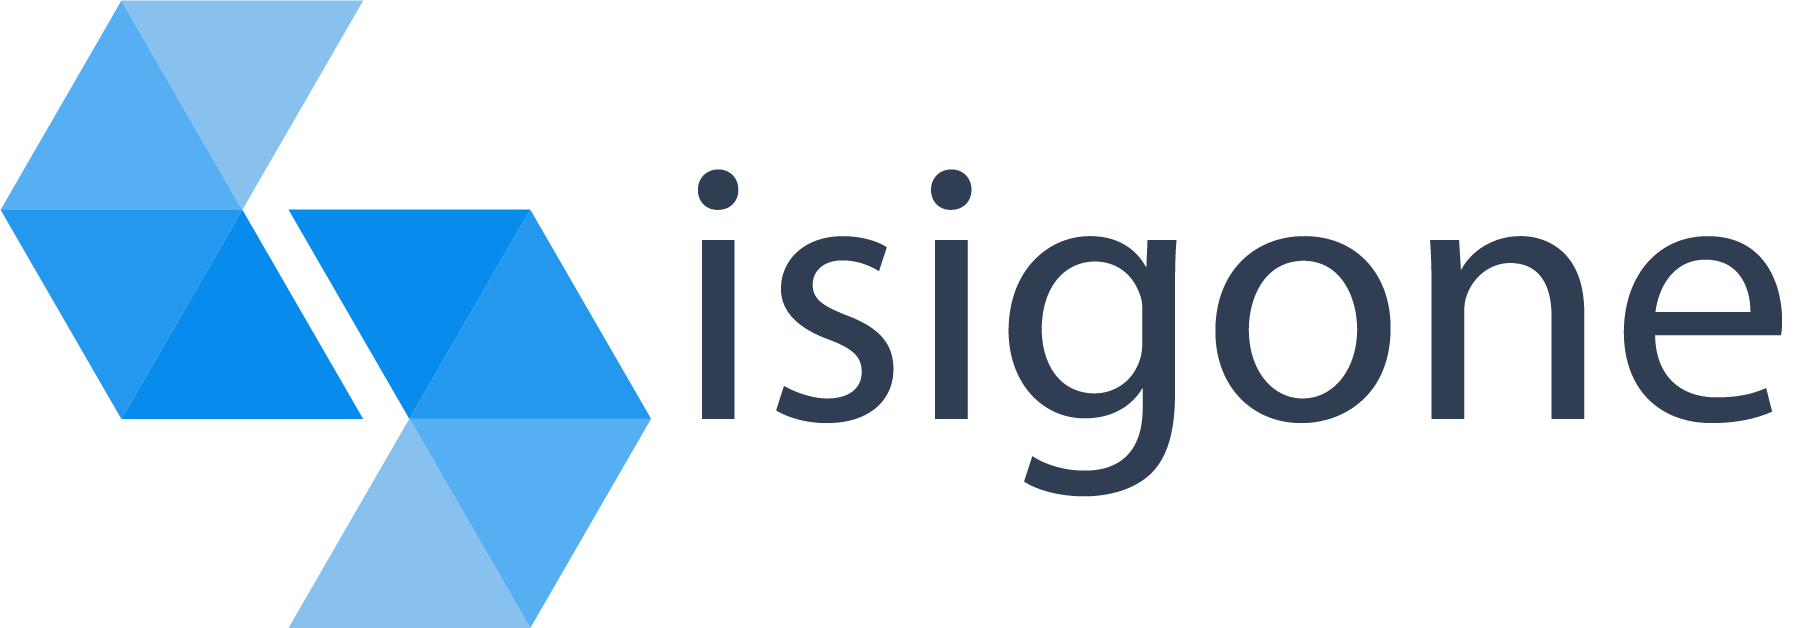 Isigone, objets connectés, échanges de données IoT et ingénierie logicielle